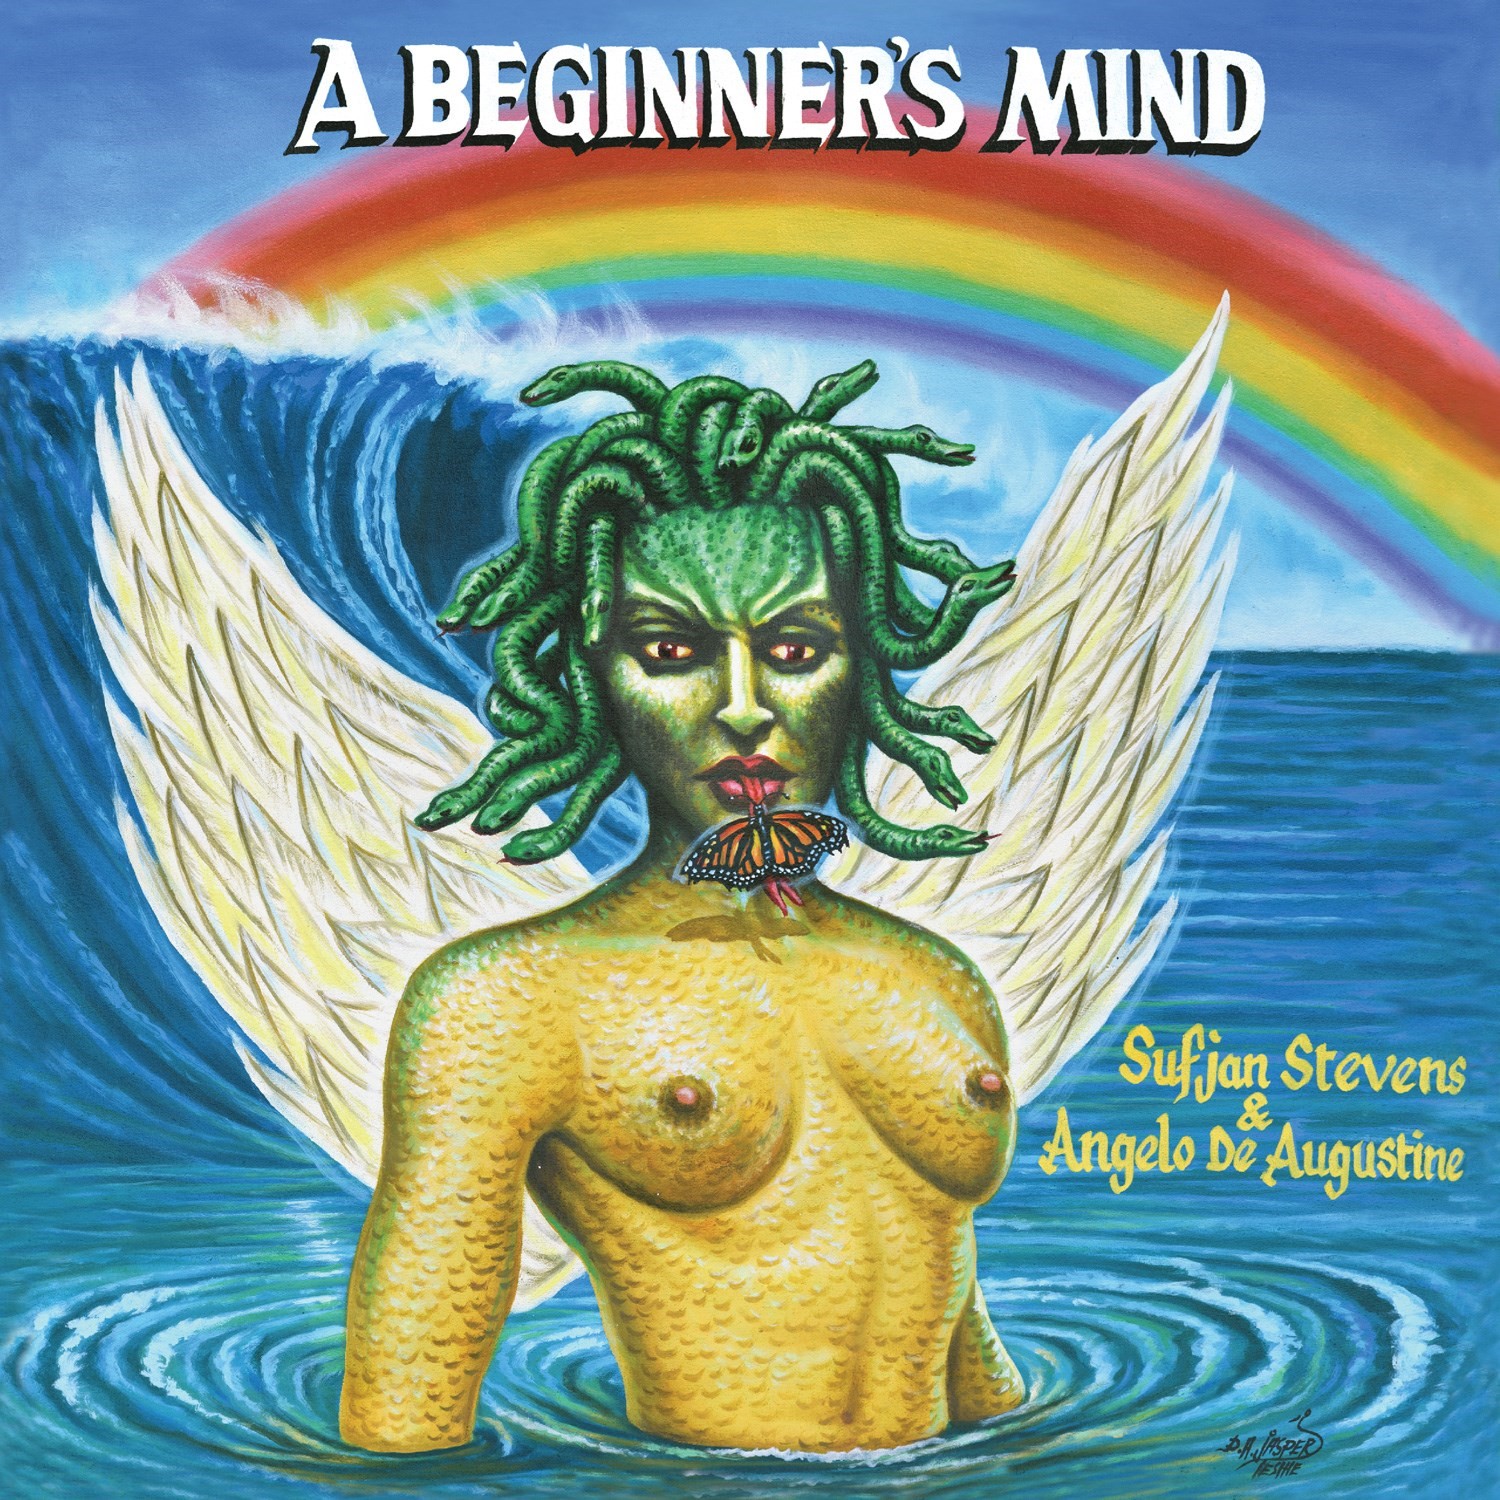 Sufjan Stevens &amp; Angelo De Augustine – A Beginner’s Mind